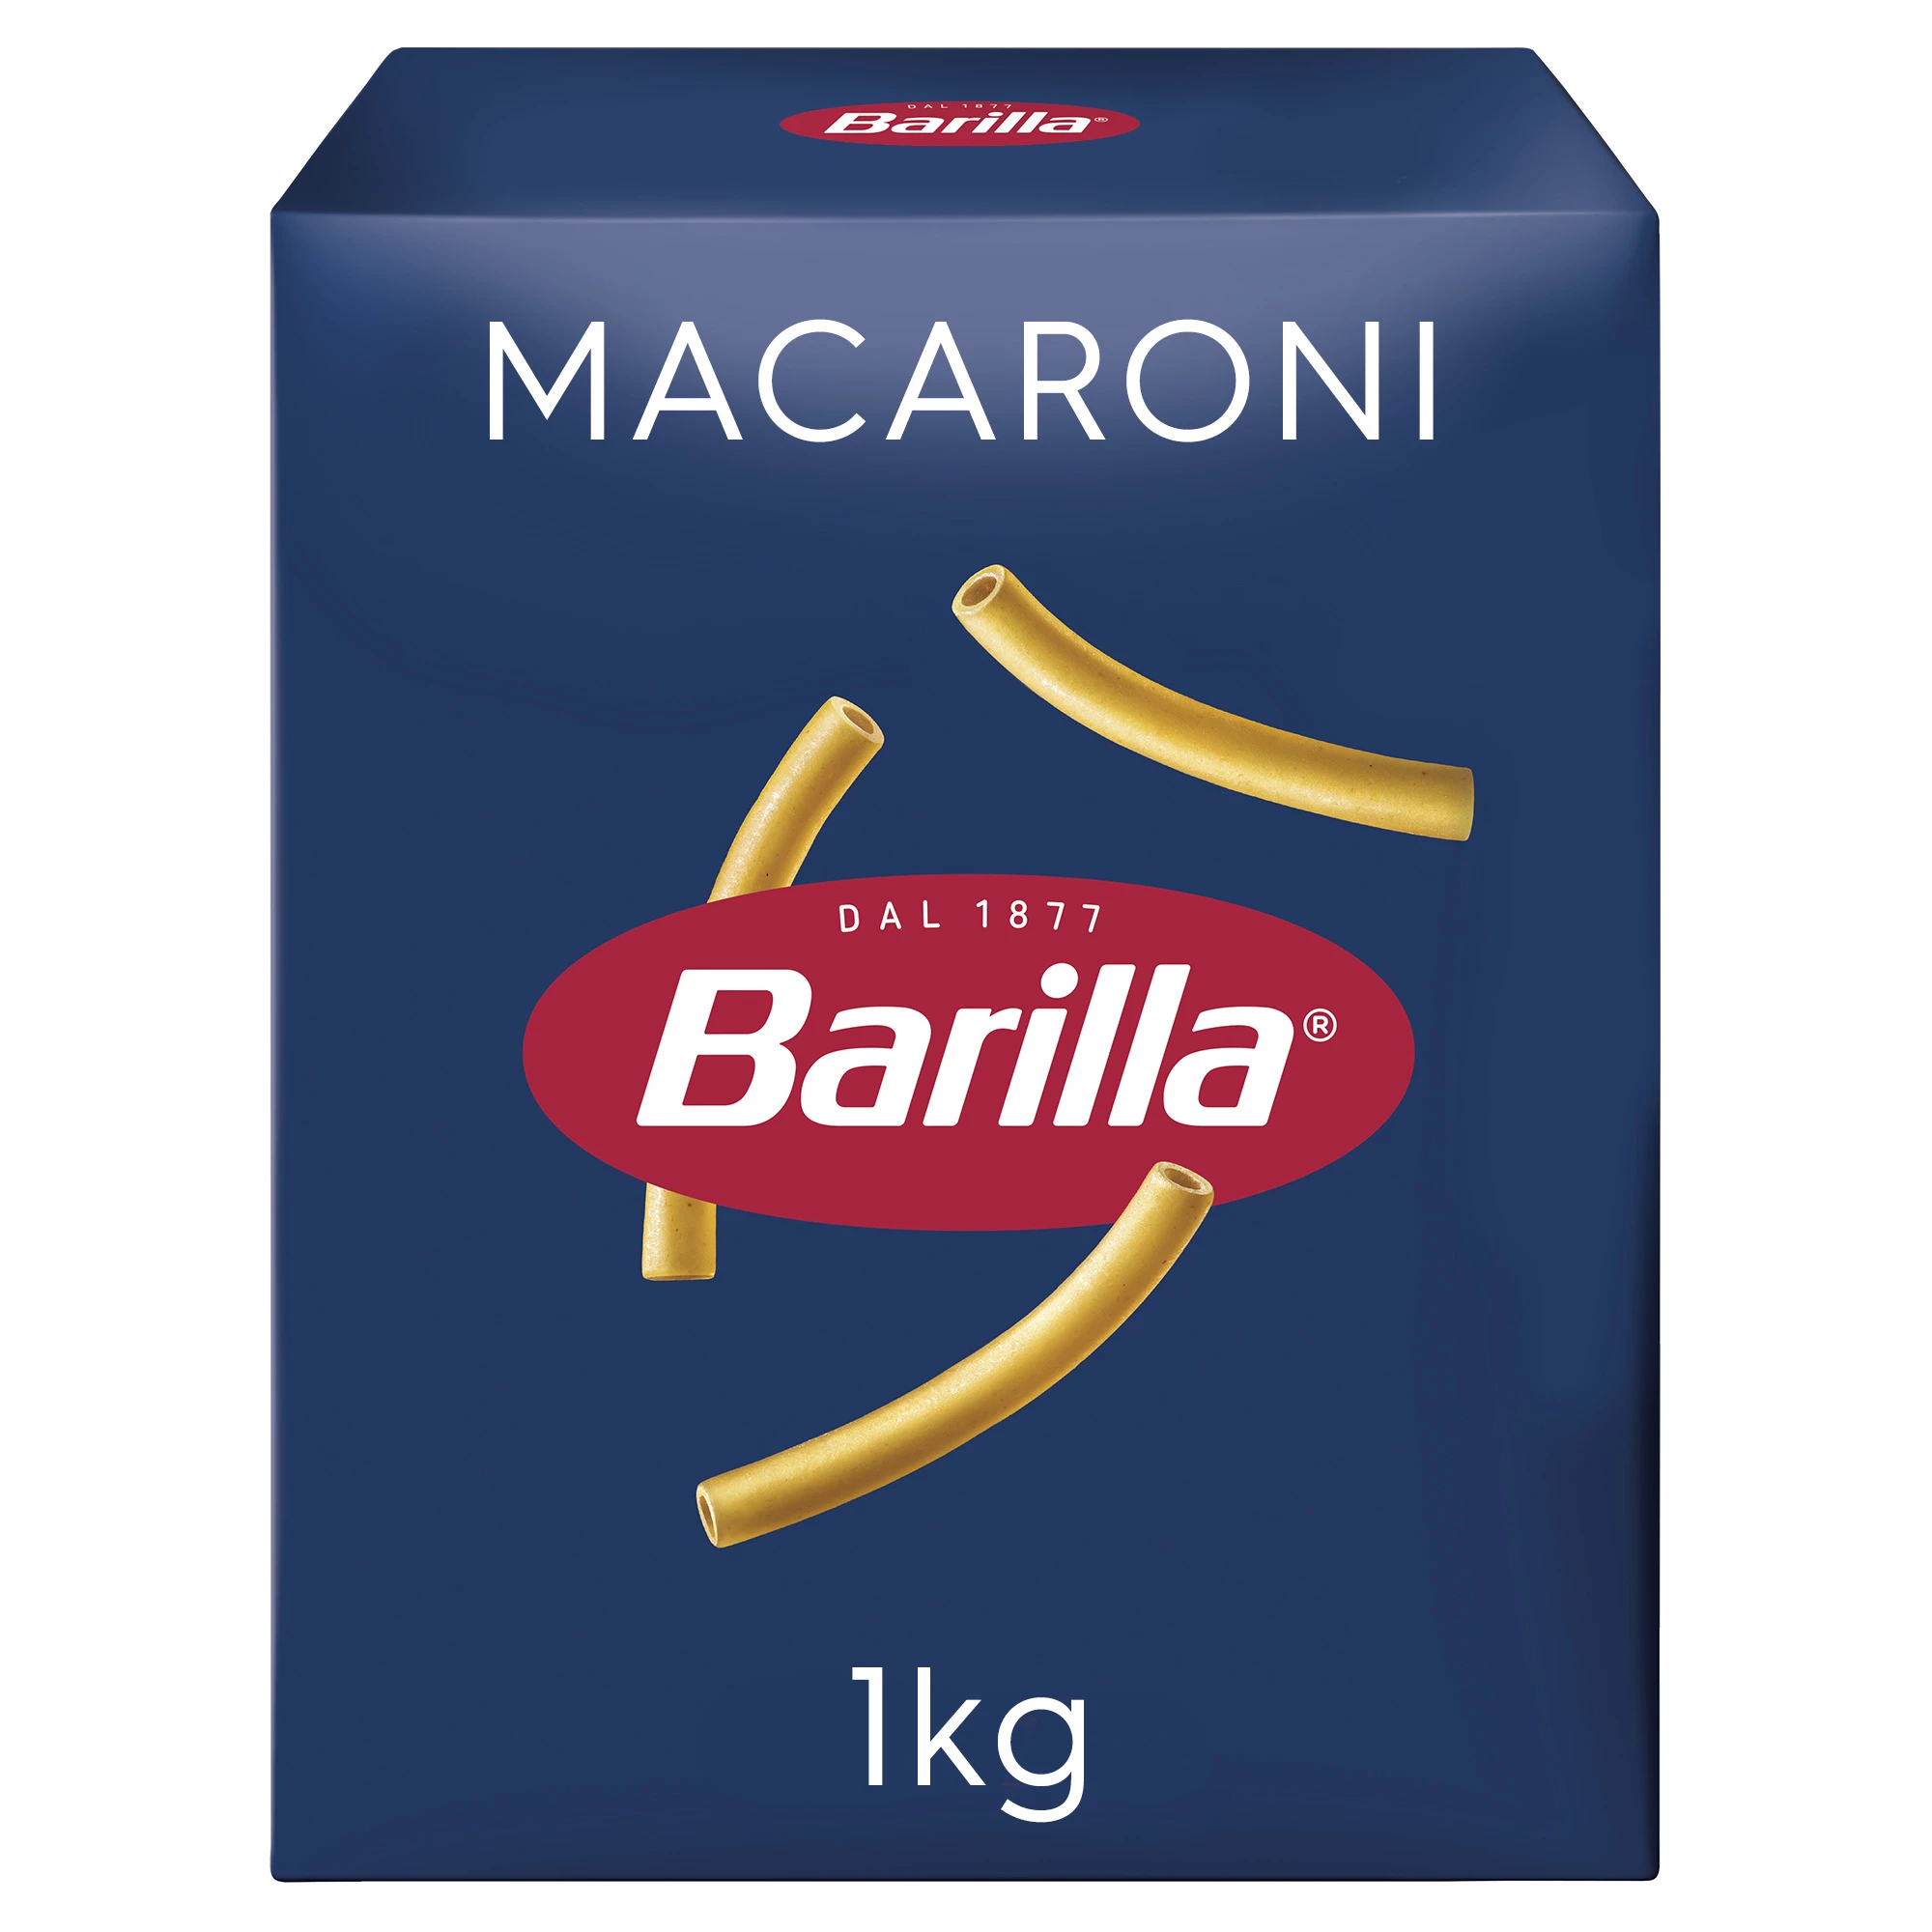 Macaroni Pasta, 1 kg - BARILLA